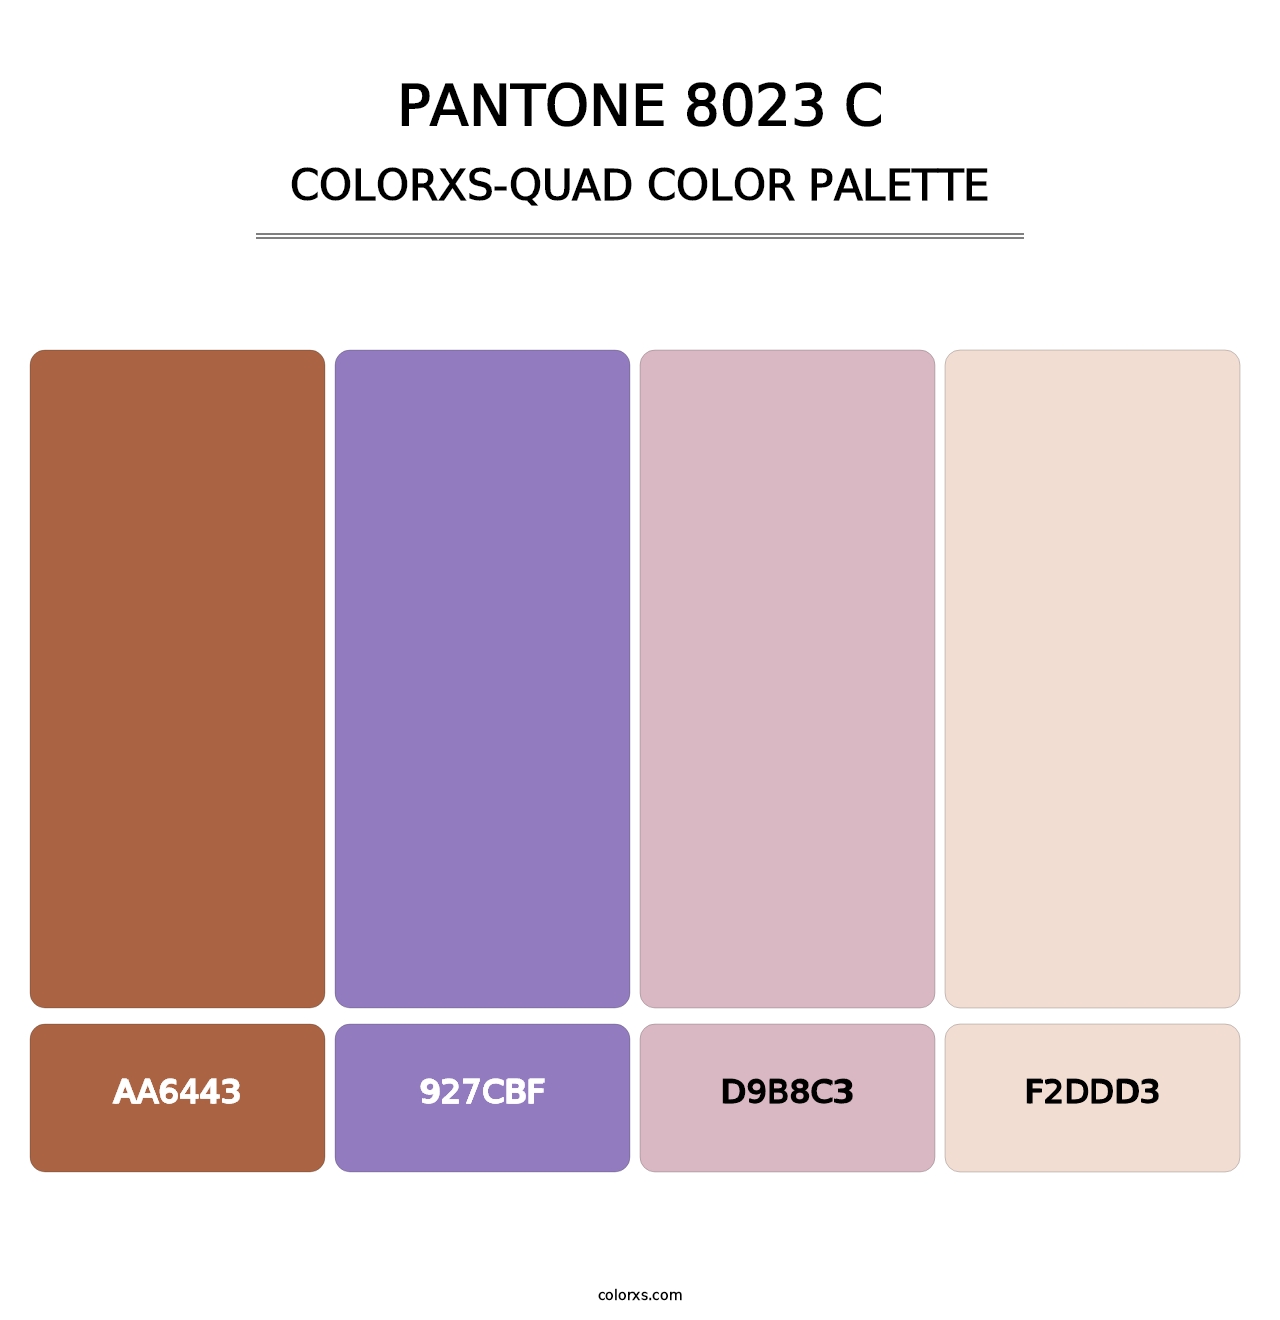 PANTONE 8023 C - Colorxs Quad Palette